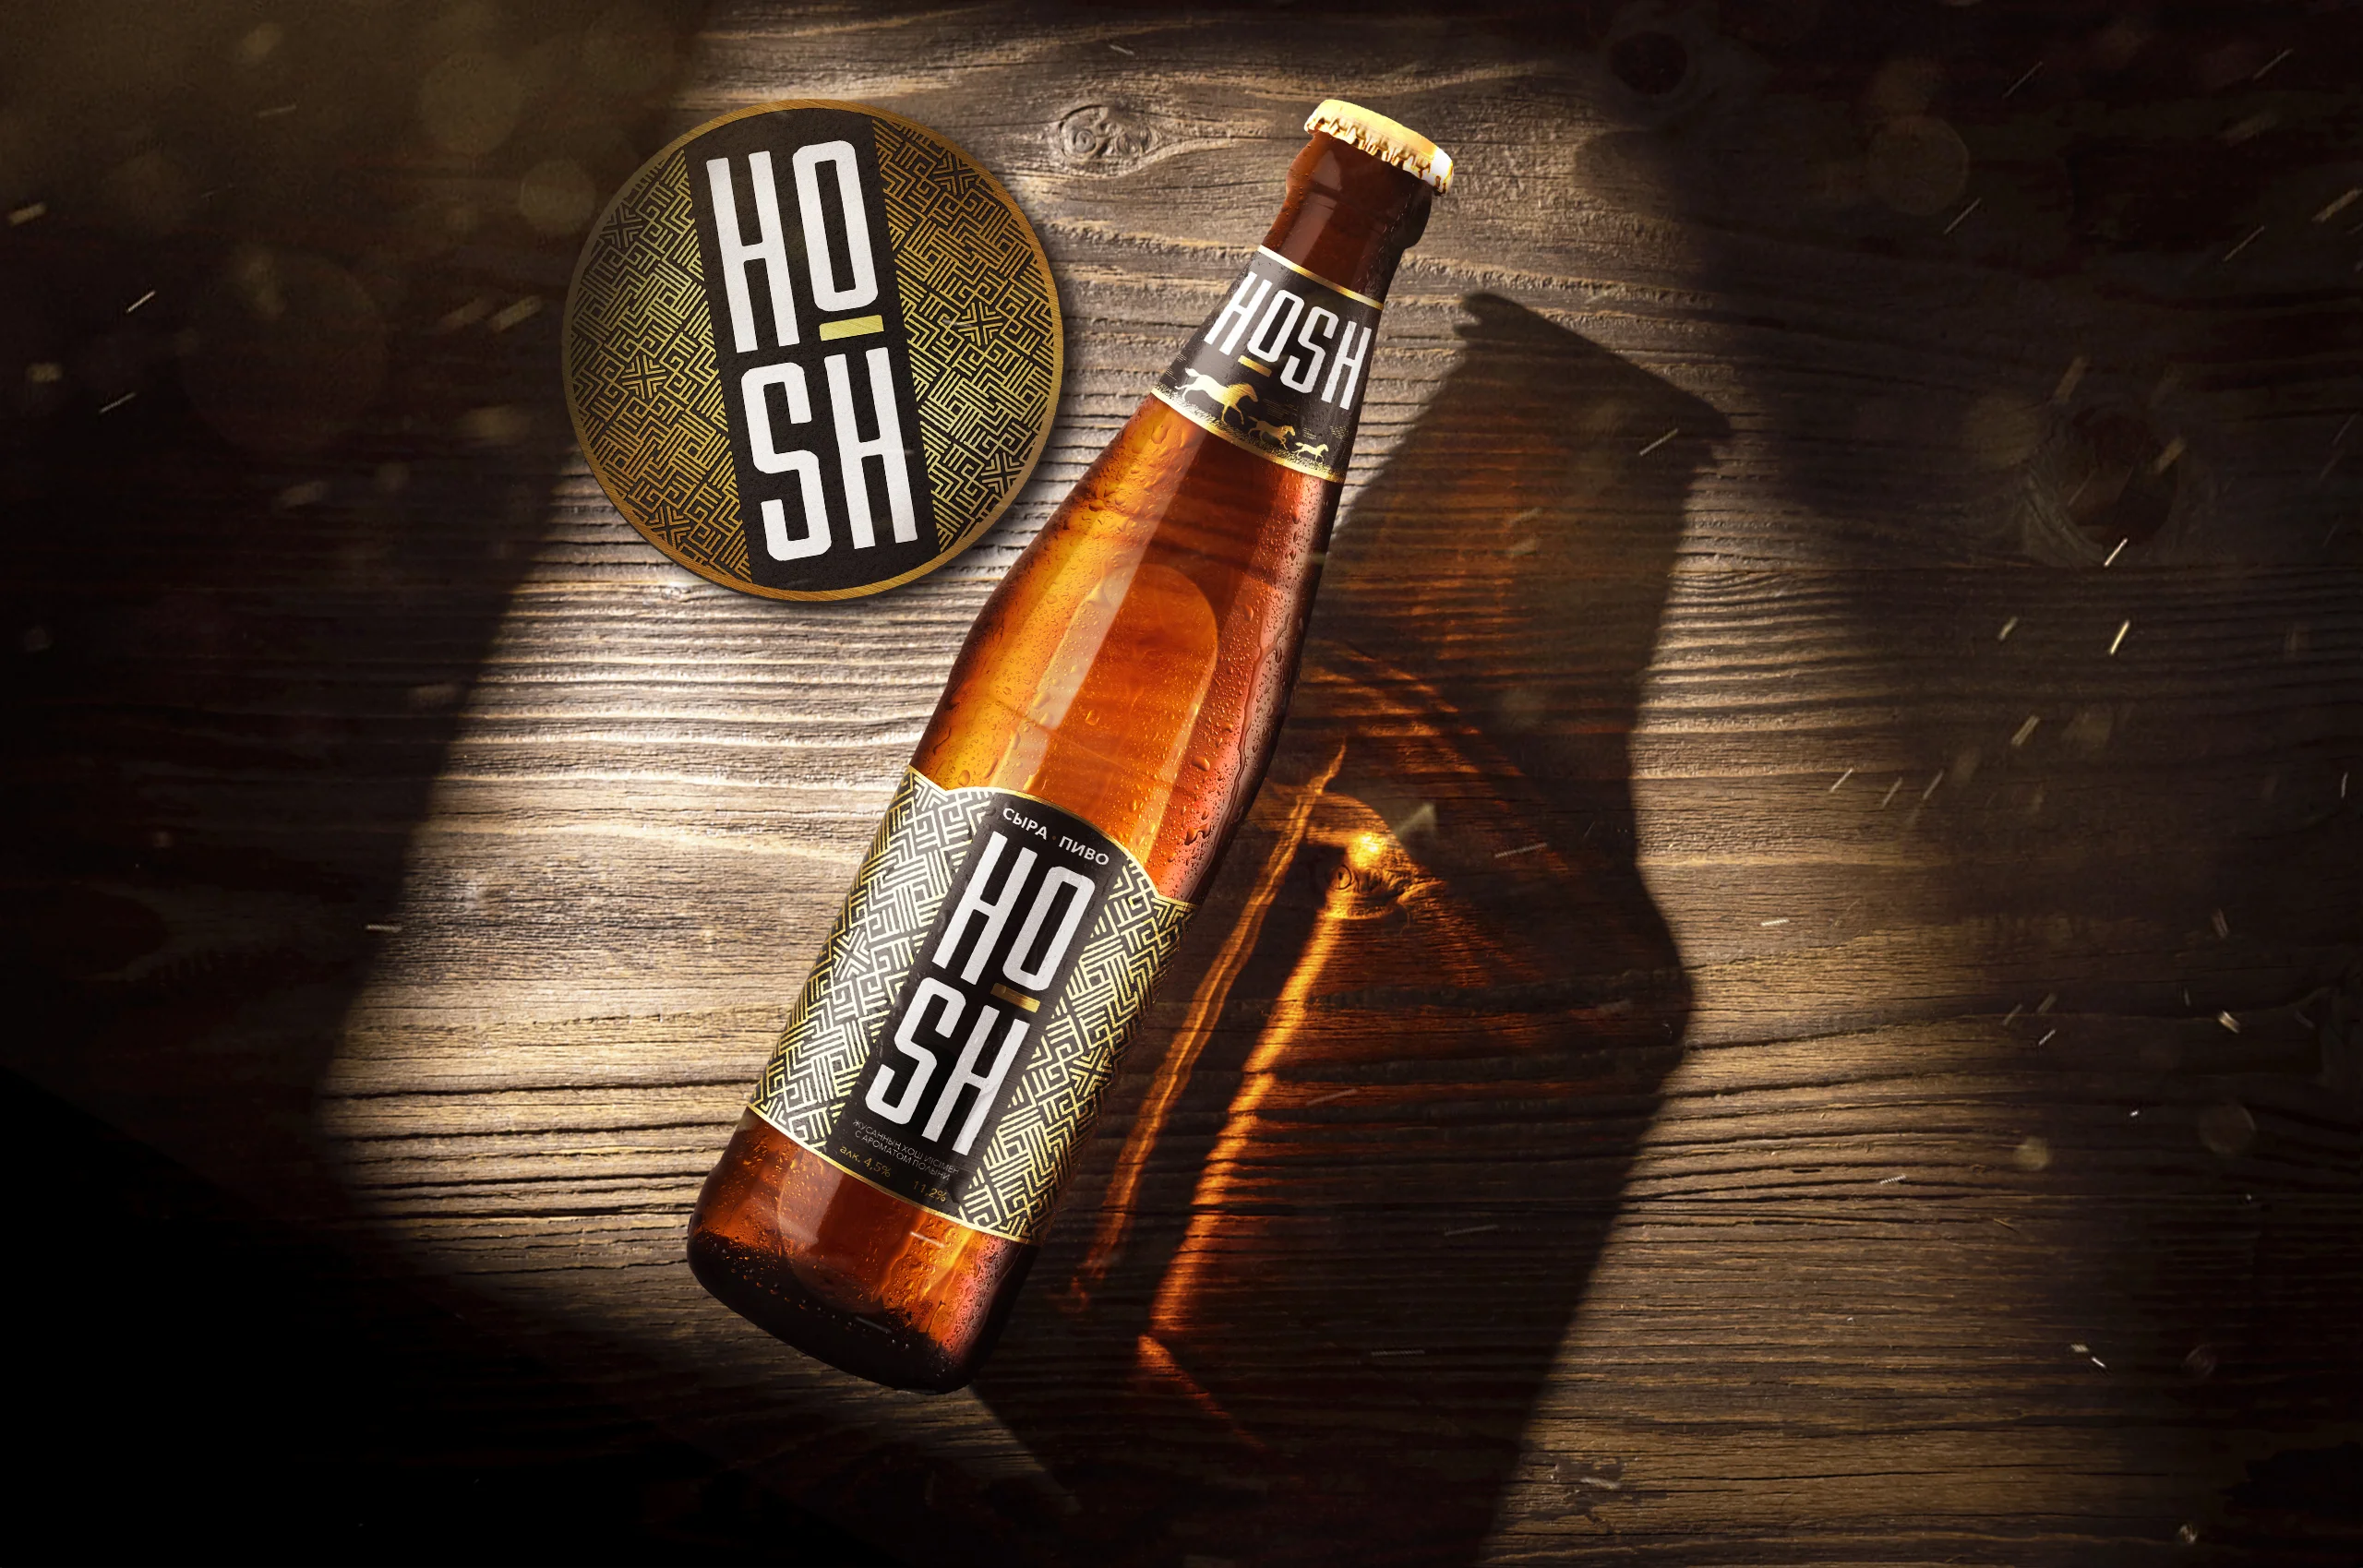 Разработка бренда пива HOSH